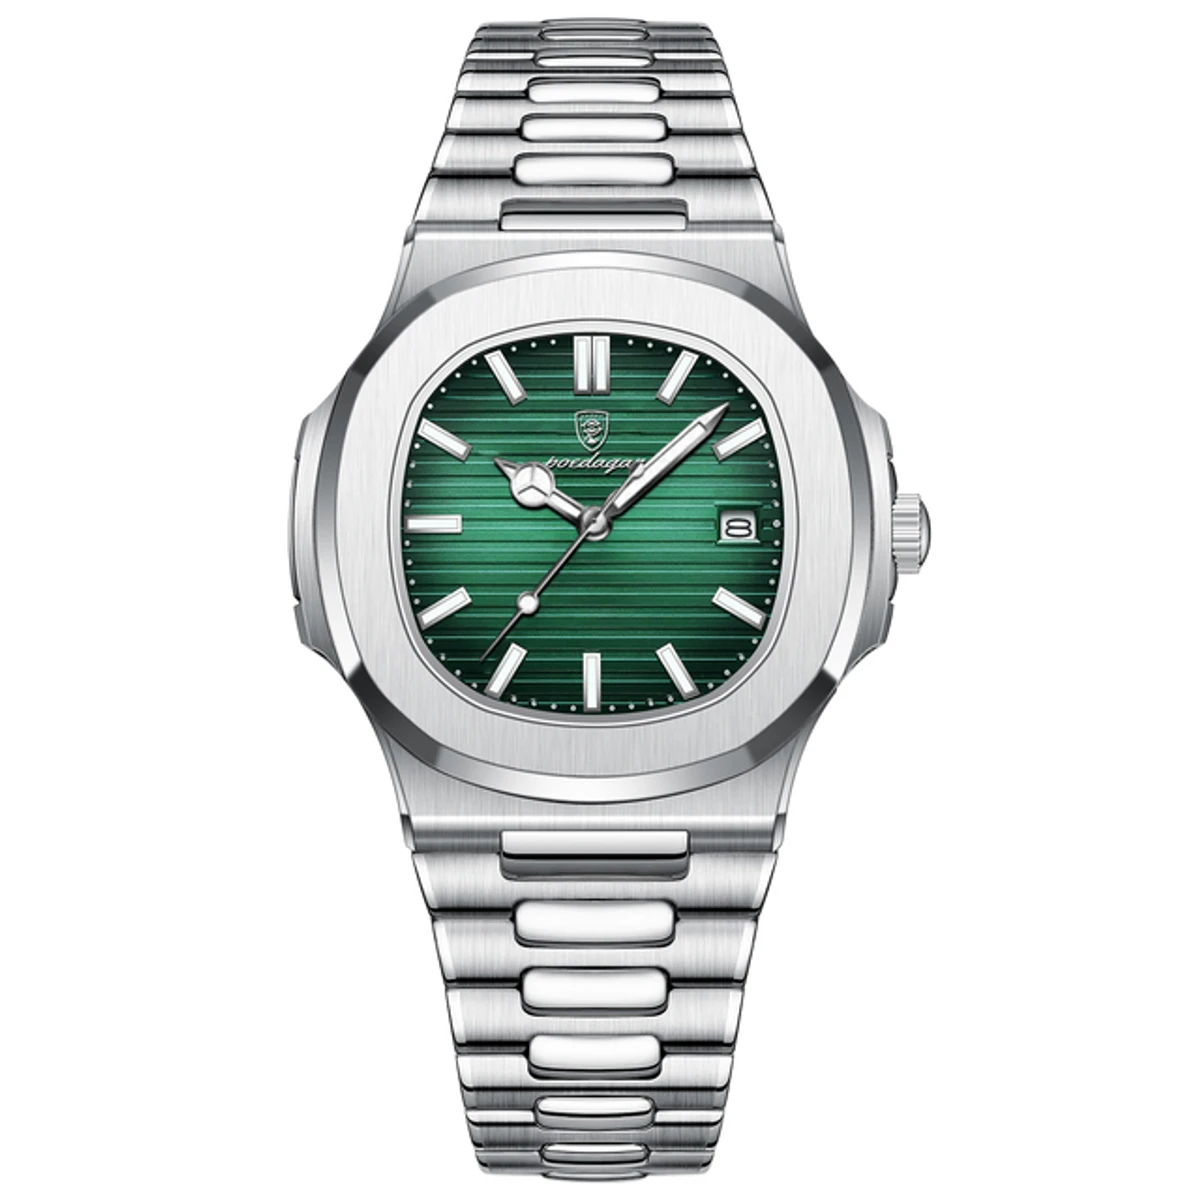 Poedagar 613 Business Quartz Luxury Stainless Steel Watch for Men-silver green